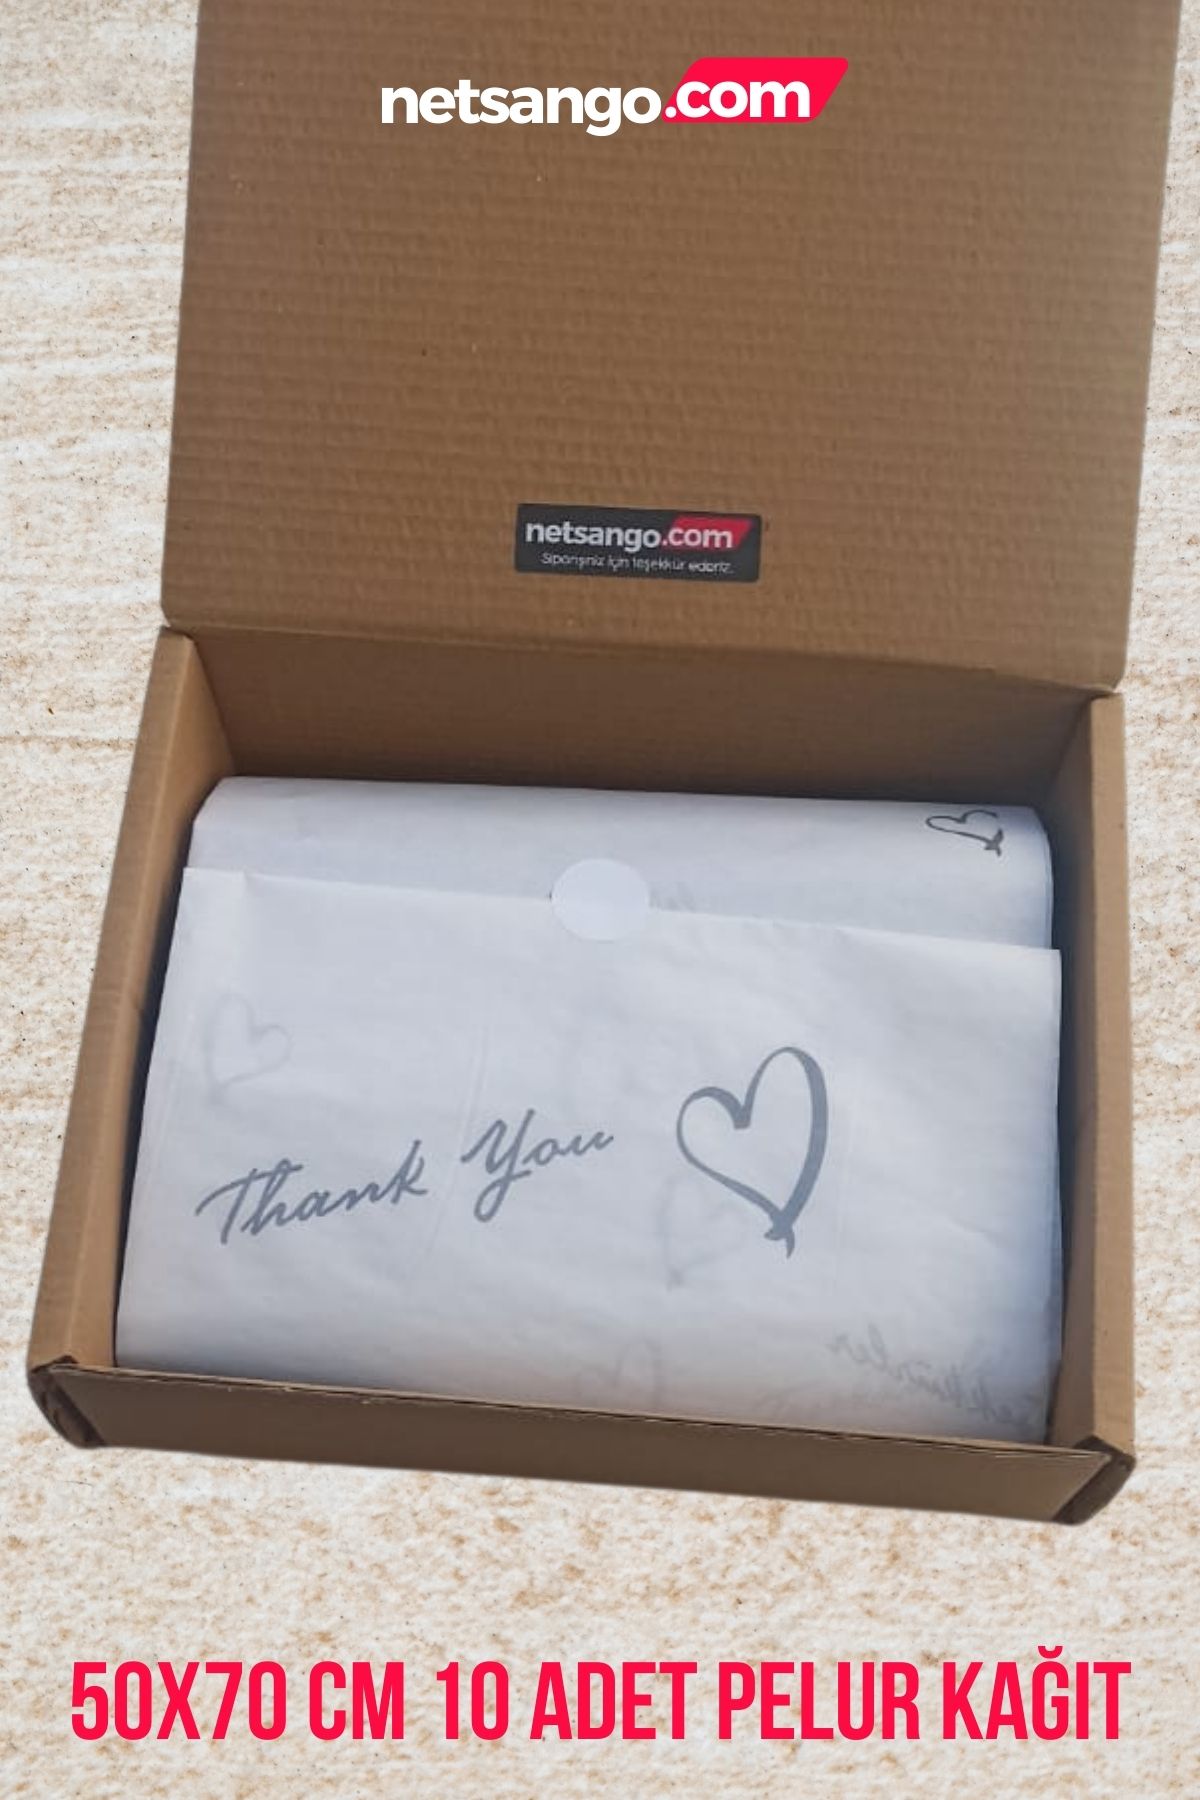 Netsan Etiket Kalpli Teşekkürler Temalı 50x70 Cm 10 Adet Pelur Kağıdı